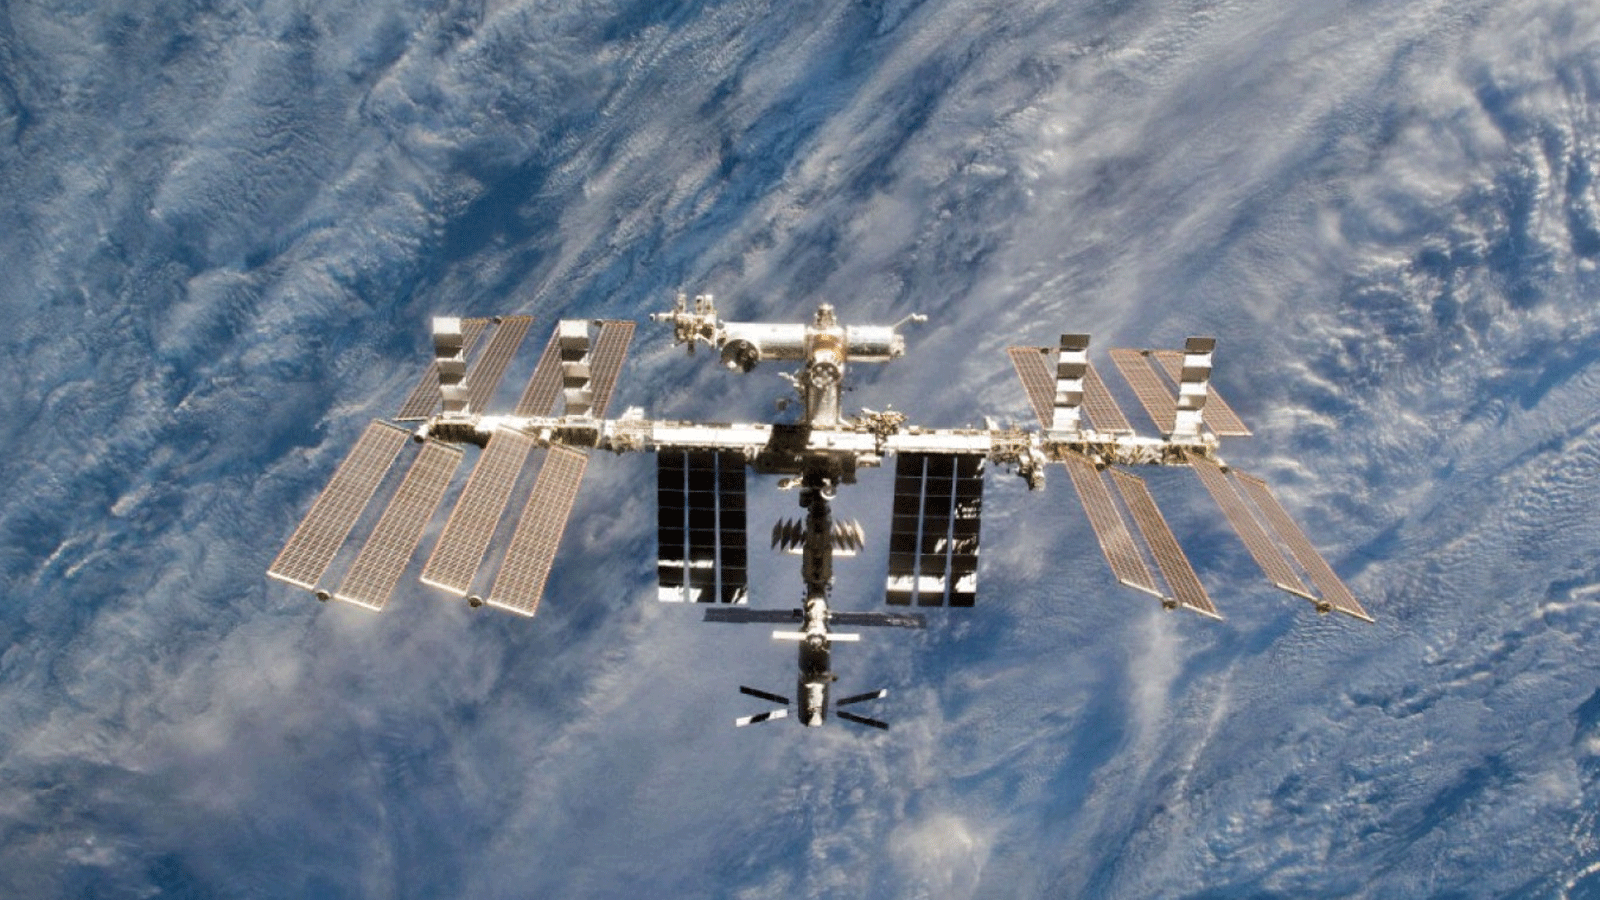 أربعة أمريكيين وألماني وروسان موجودون حاليًا على متن محطة الفضاء الدولية.